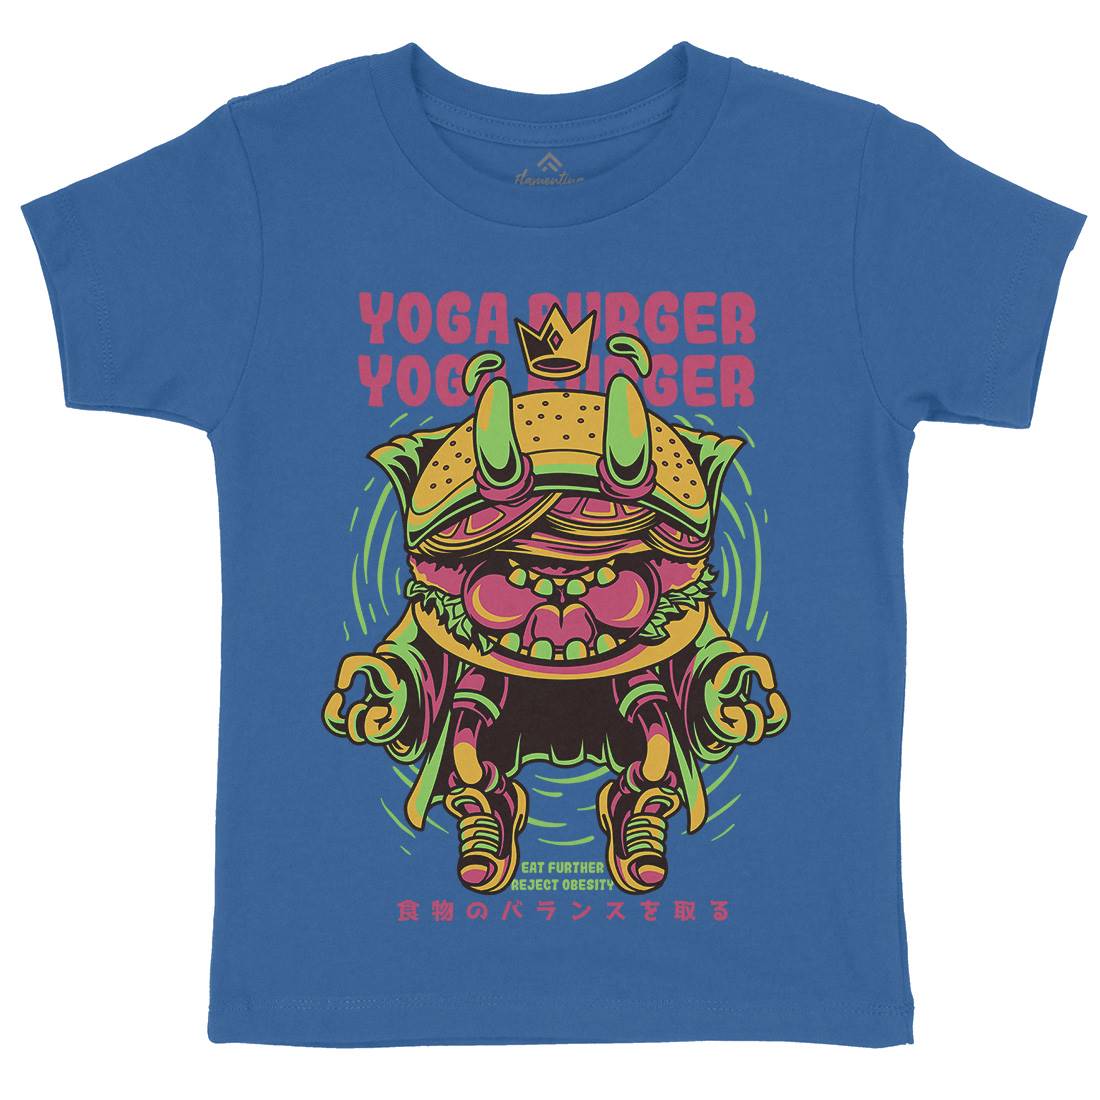 Yoga Burger Kids Organic Crew Neck T-Shirt Food D892